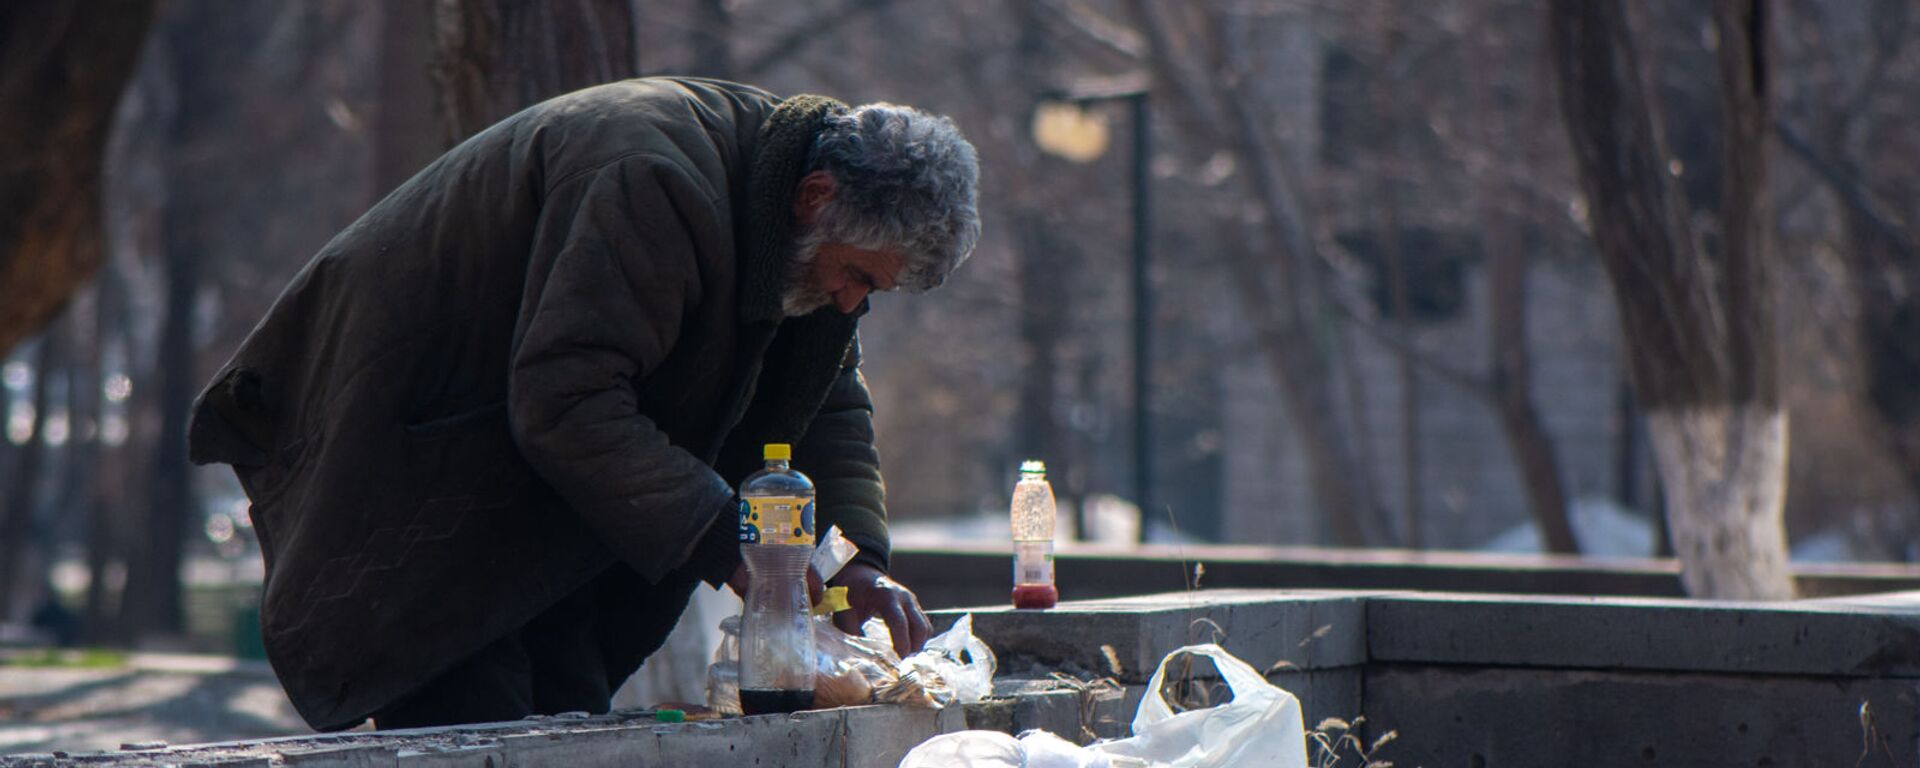 Бездомный мужчина обедает в городском парке - Sputnik Армения, 1920, 14.10.2021